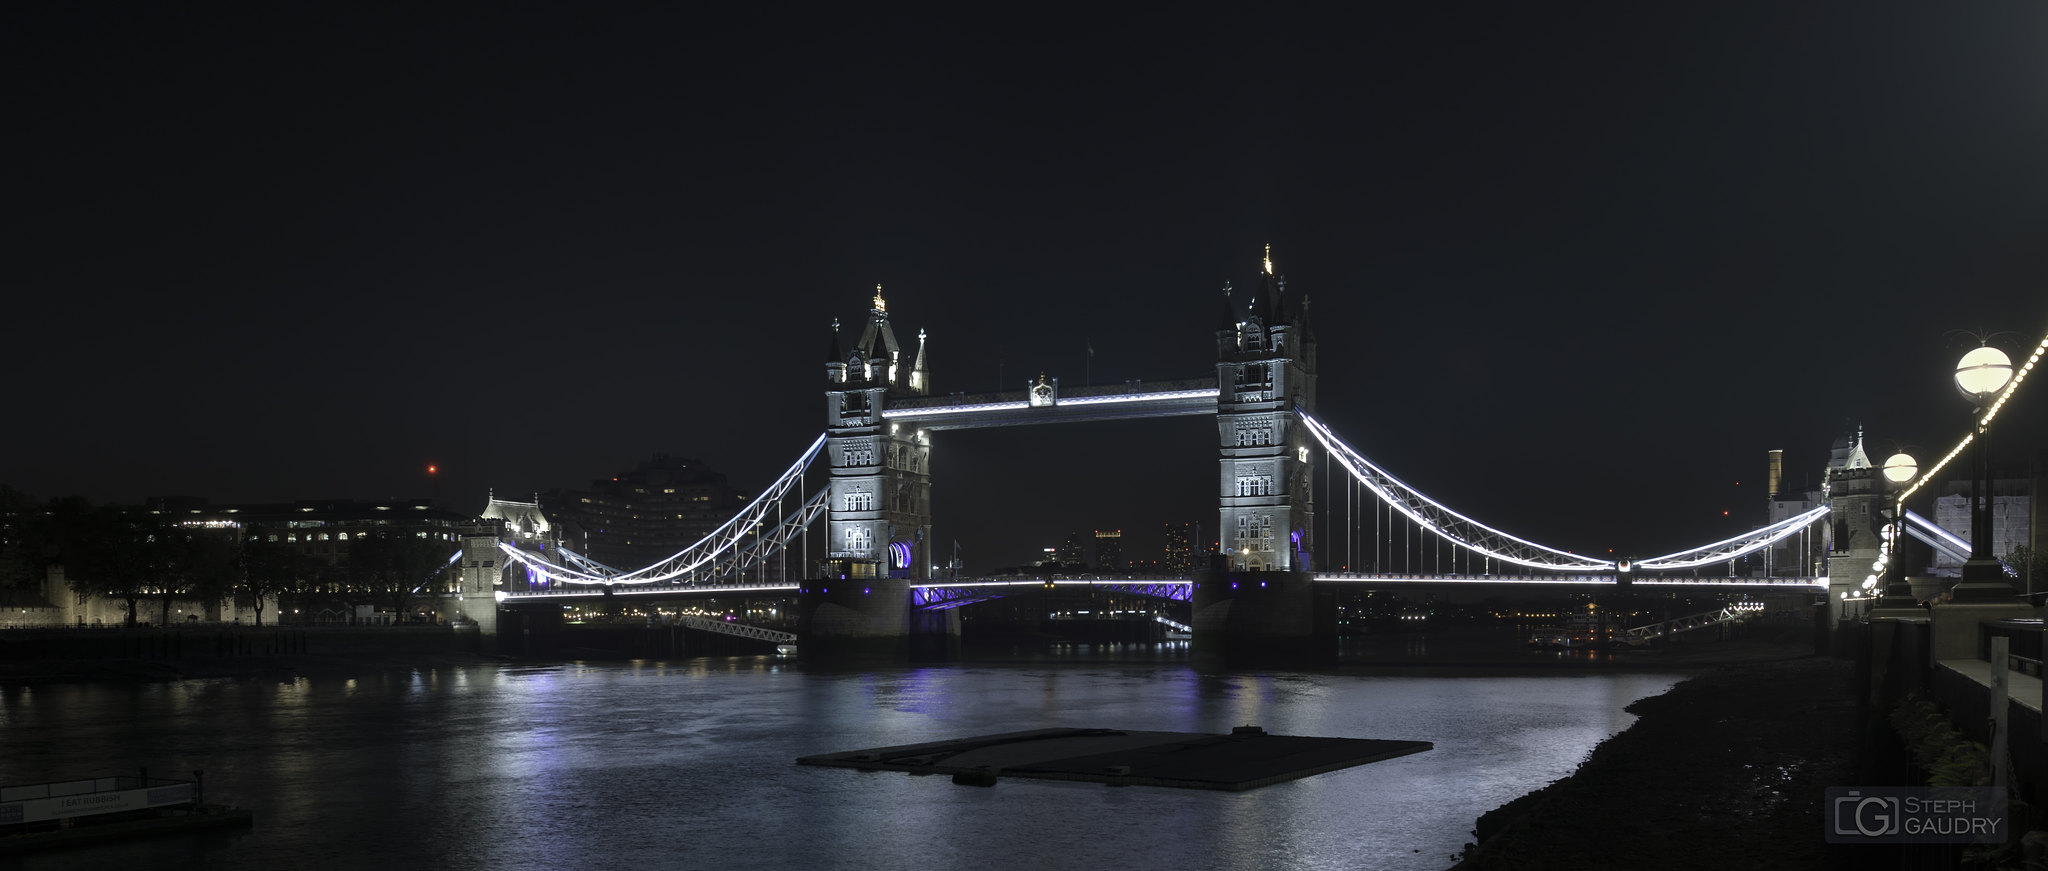 London tower bridge - night [Click to start slideshow]